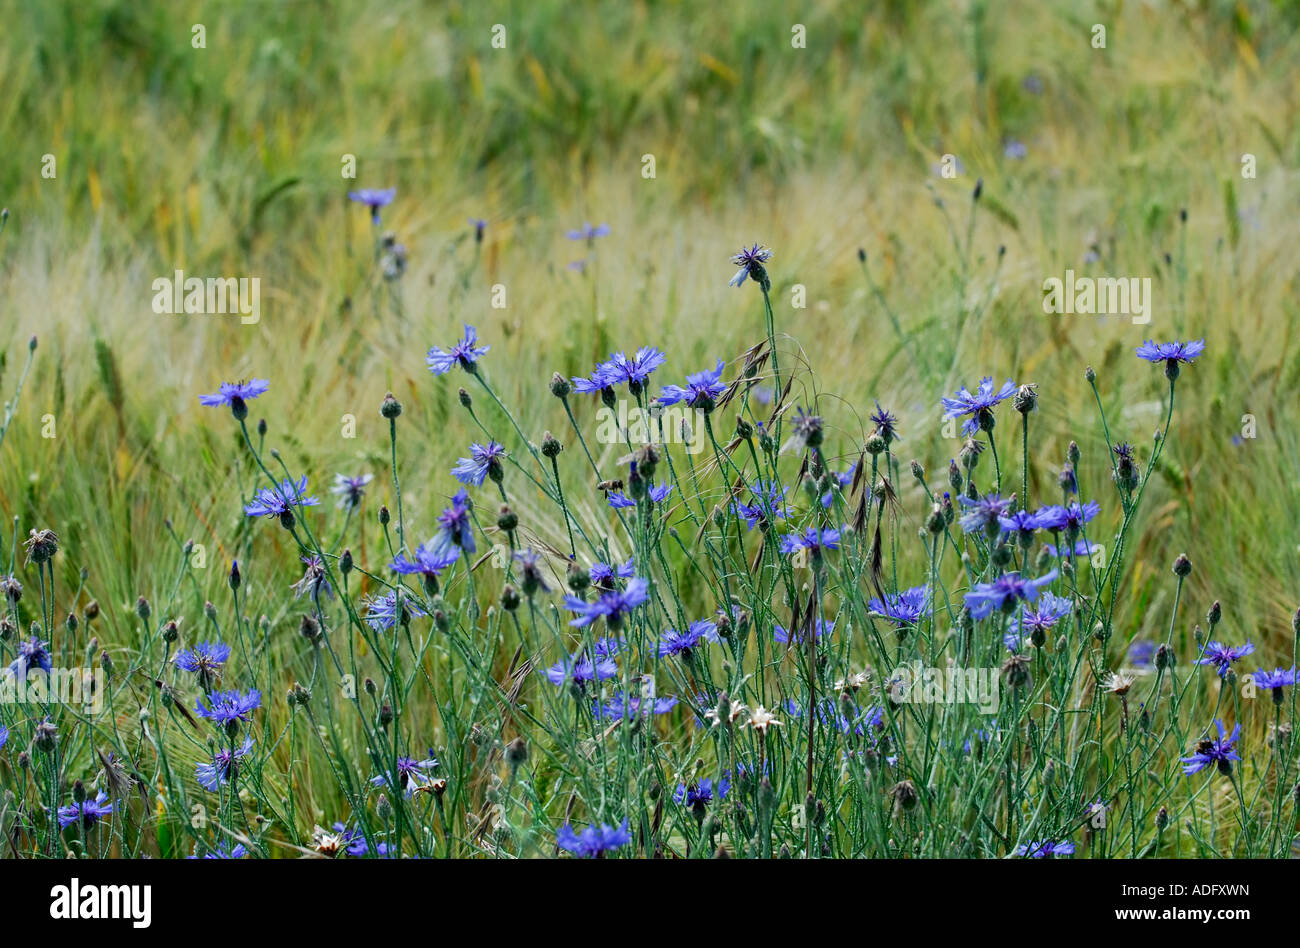 Cornflowers - Centaurea cyanus - in field of barley, France. Stock Photo